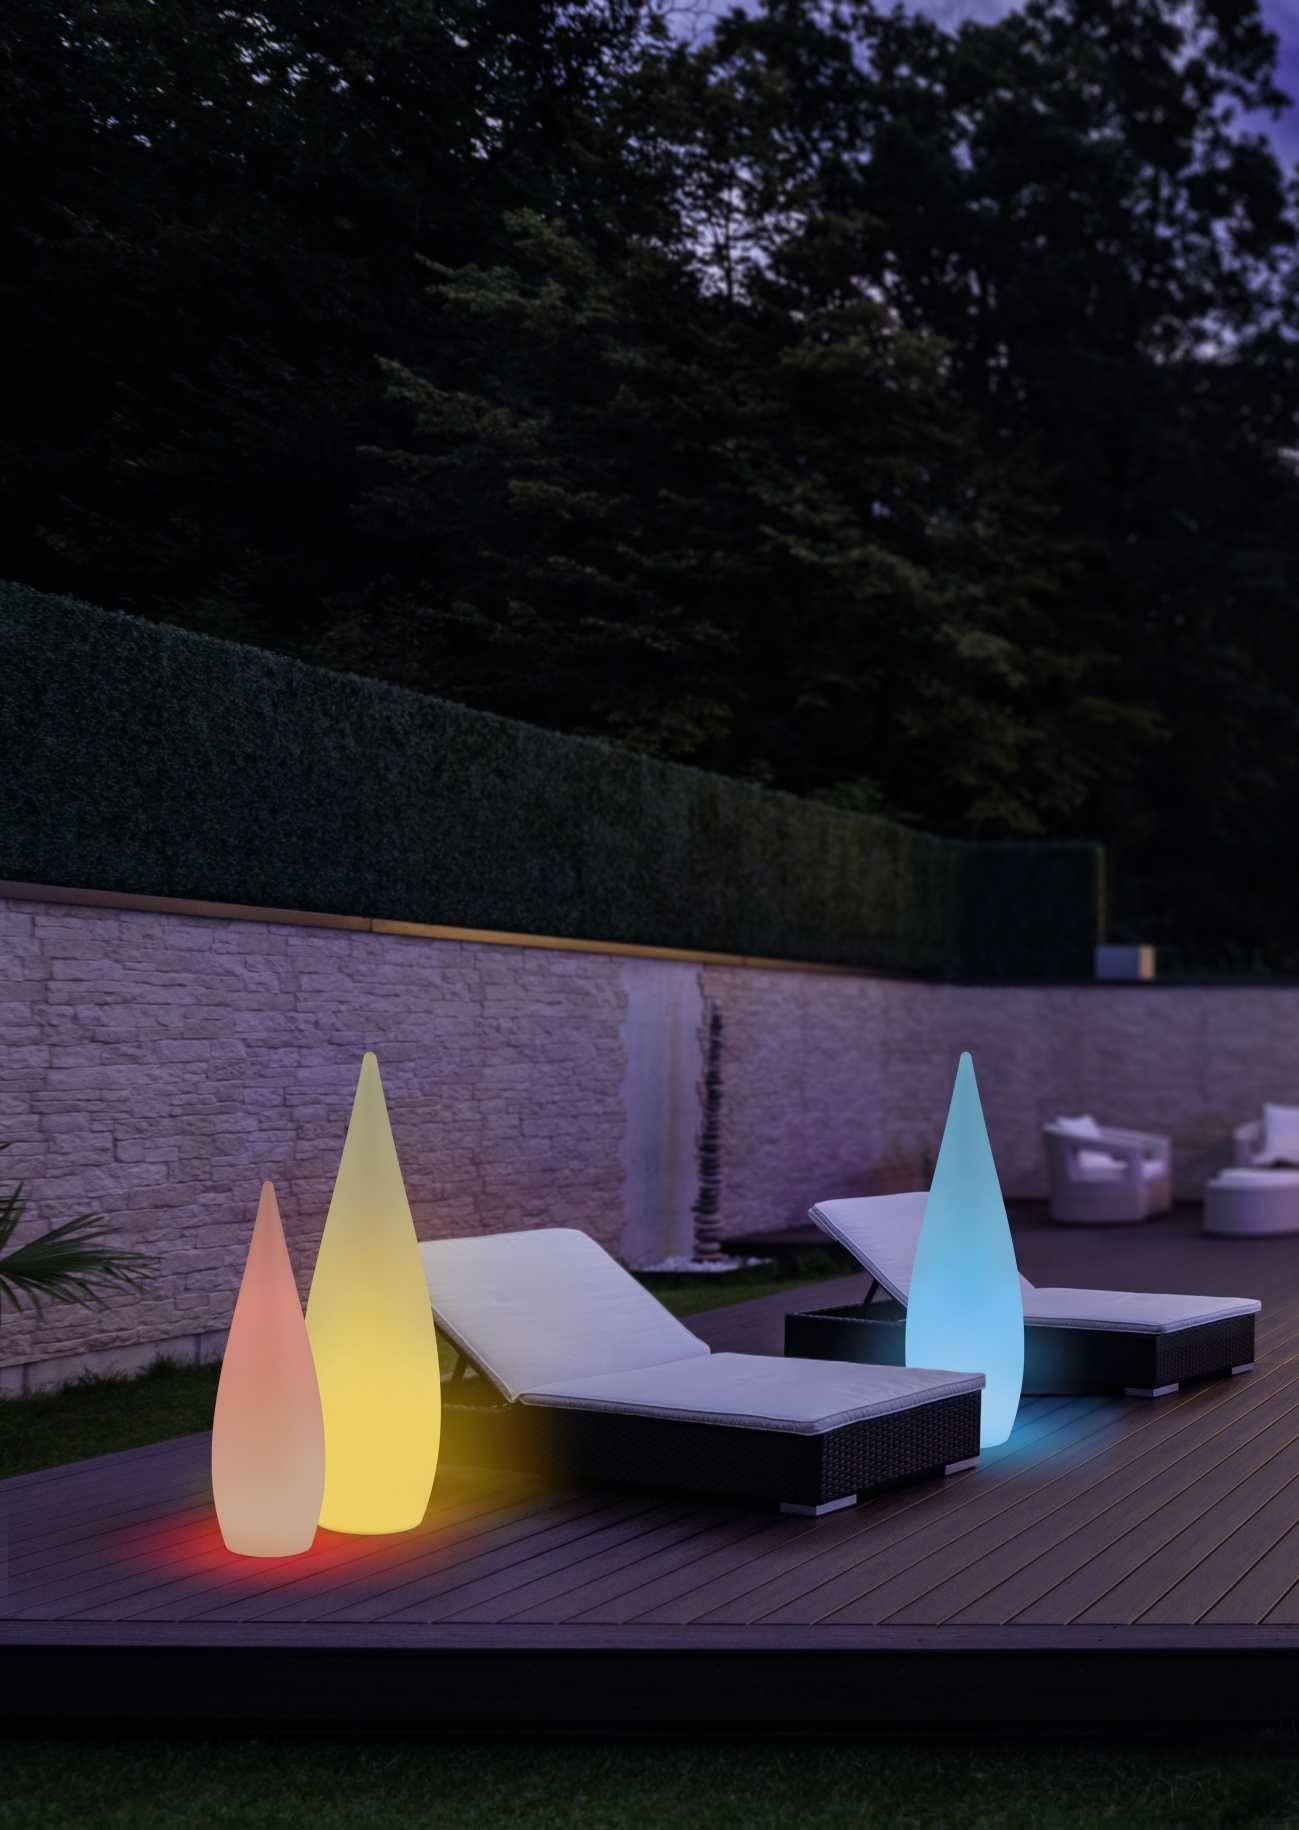 Lampe de jardin rechargeable RGB 80 cm PALMAS